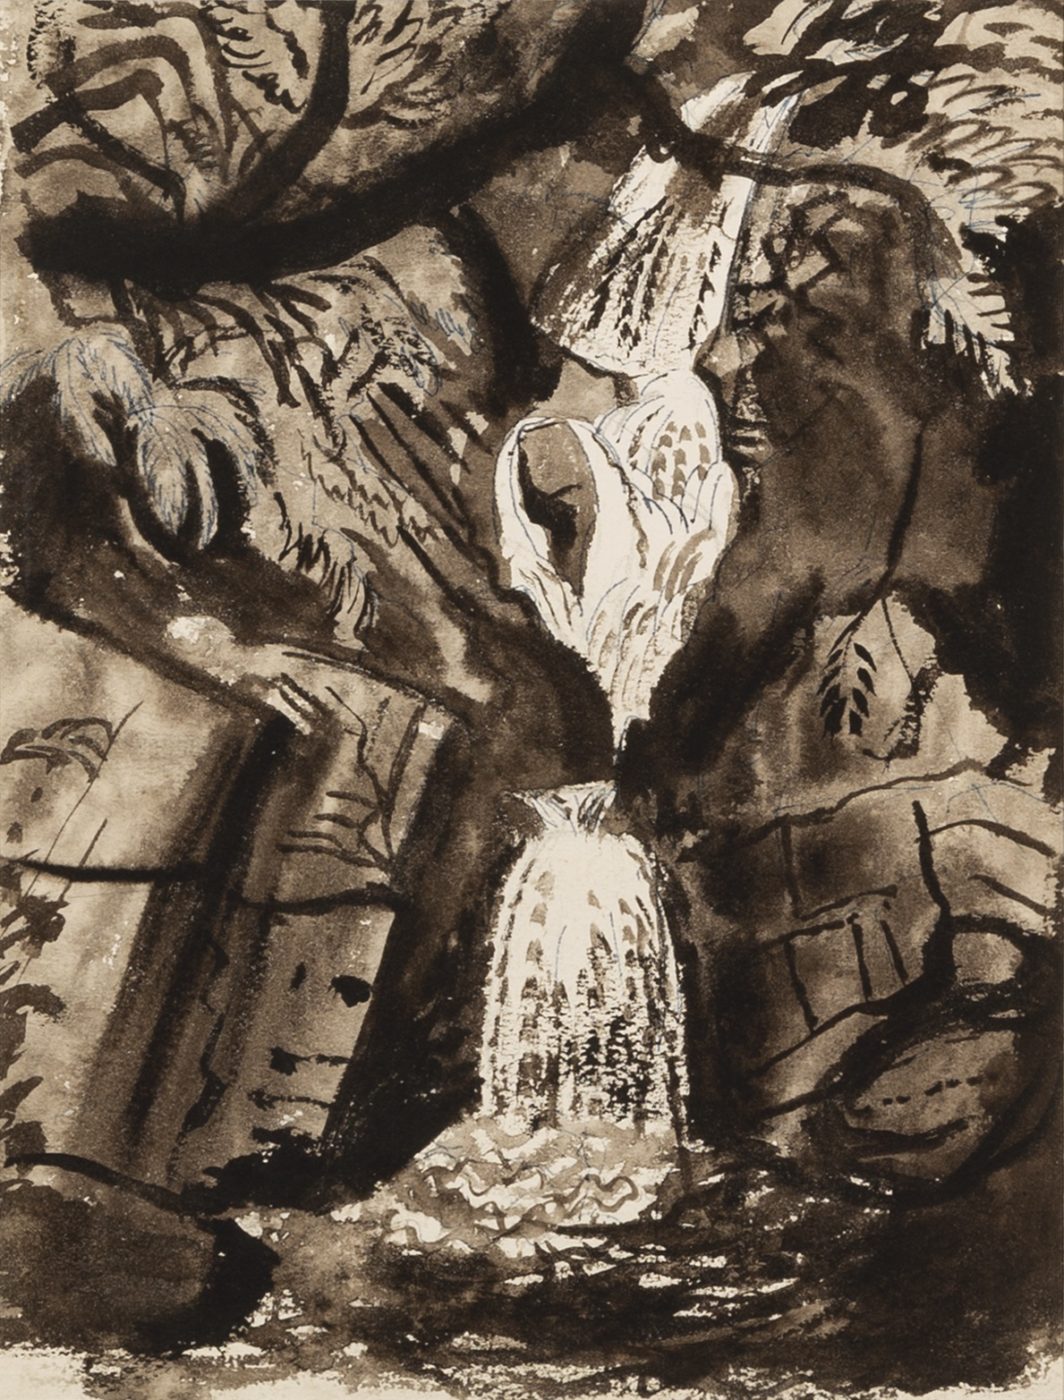 John Piper, CH (1903-1992), Waterfall near Festiniog